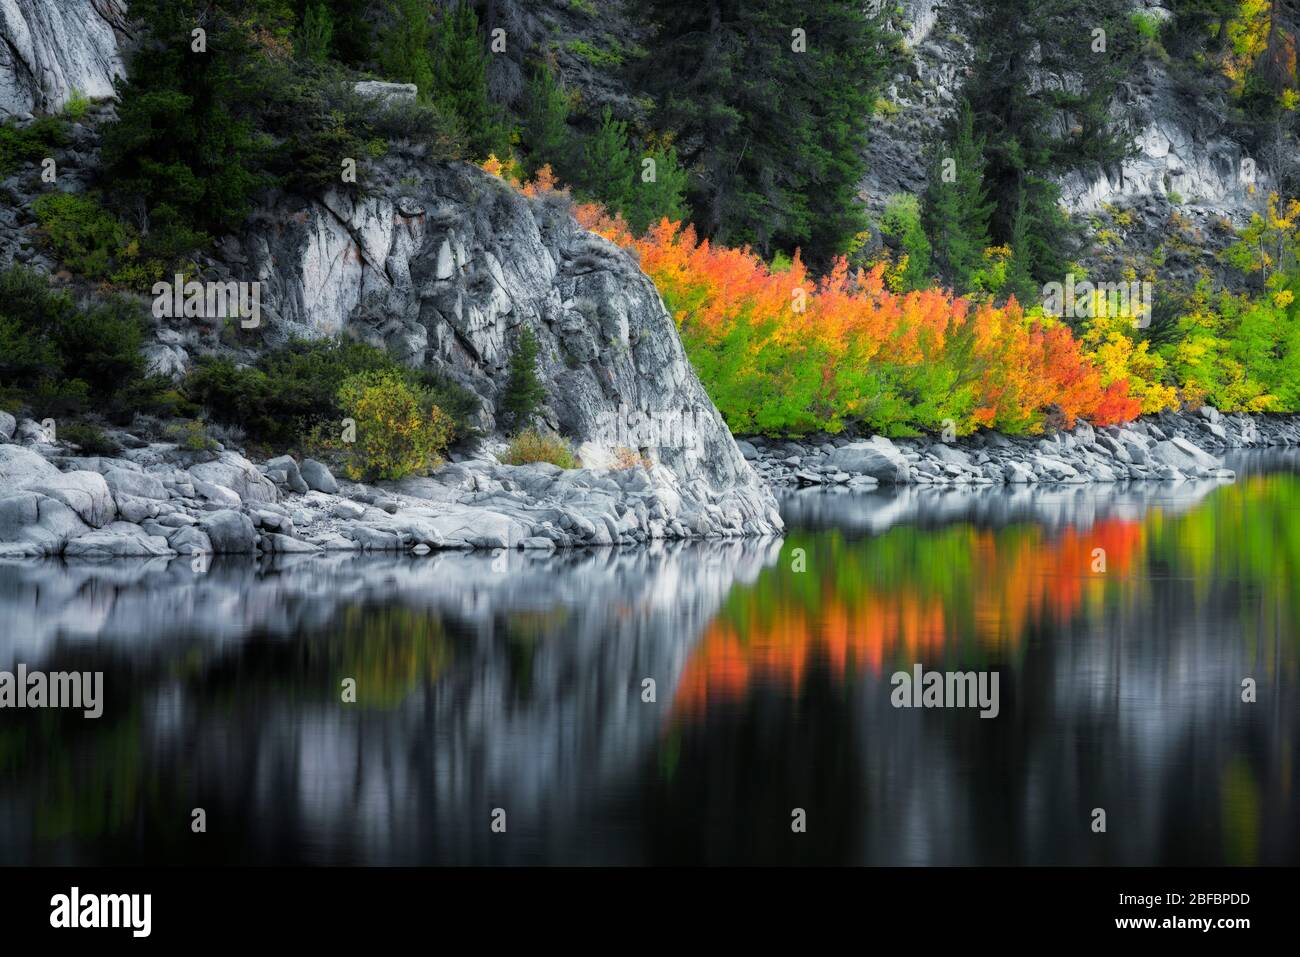 La lueur du crépuscule civil des couleurs d'automne qui s'est rebutée dans le lac Sabrina, entre la chaîne de montagnes de la Sierra orientale de Californie et la forêt nationale d'Inyo. Banque D'Images